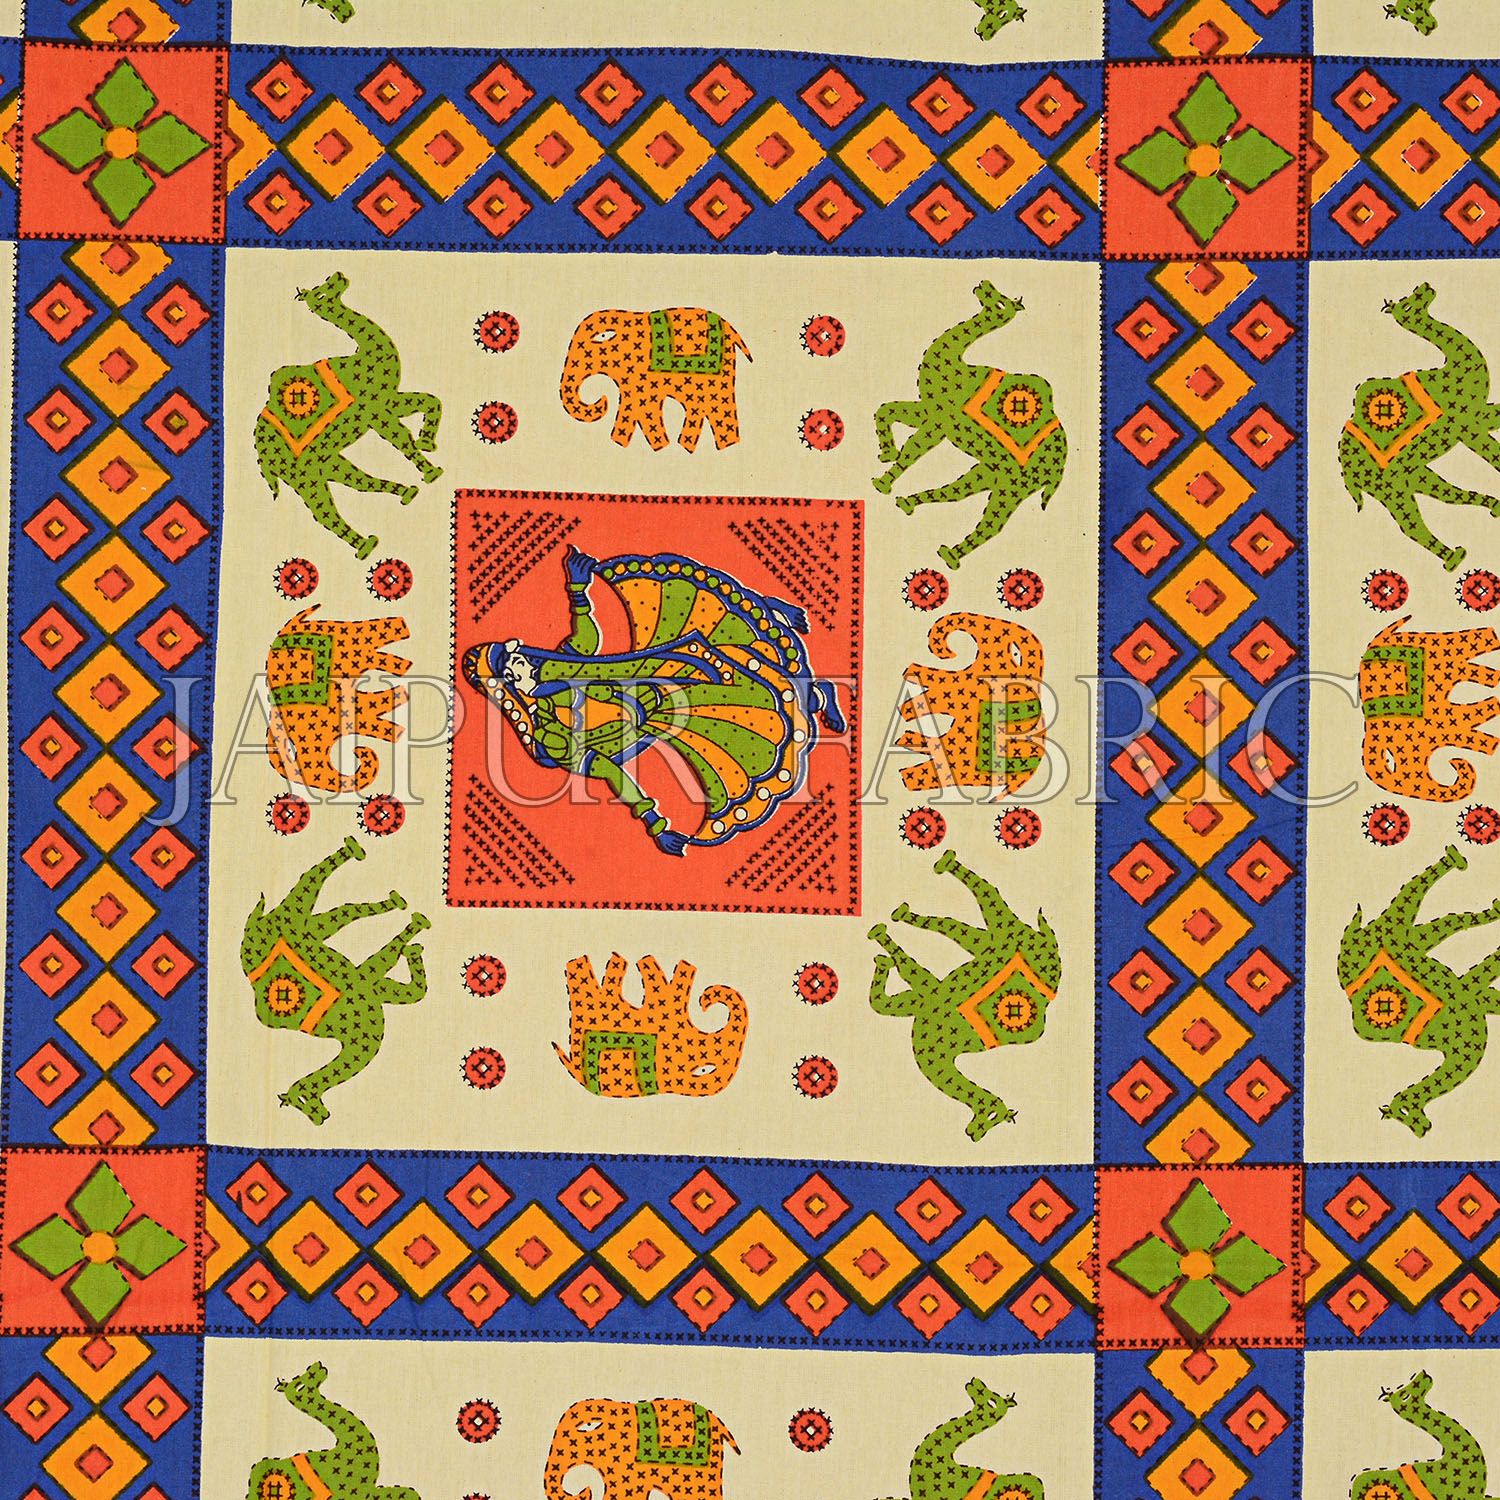 Orange Border Elephant and Camel Rajasthani Folk Dance Cotton Double Bed Sheet